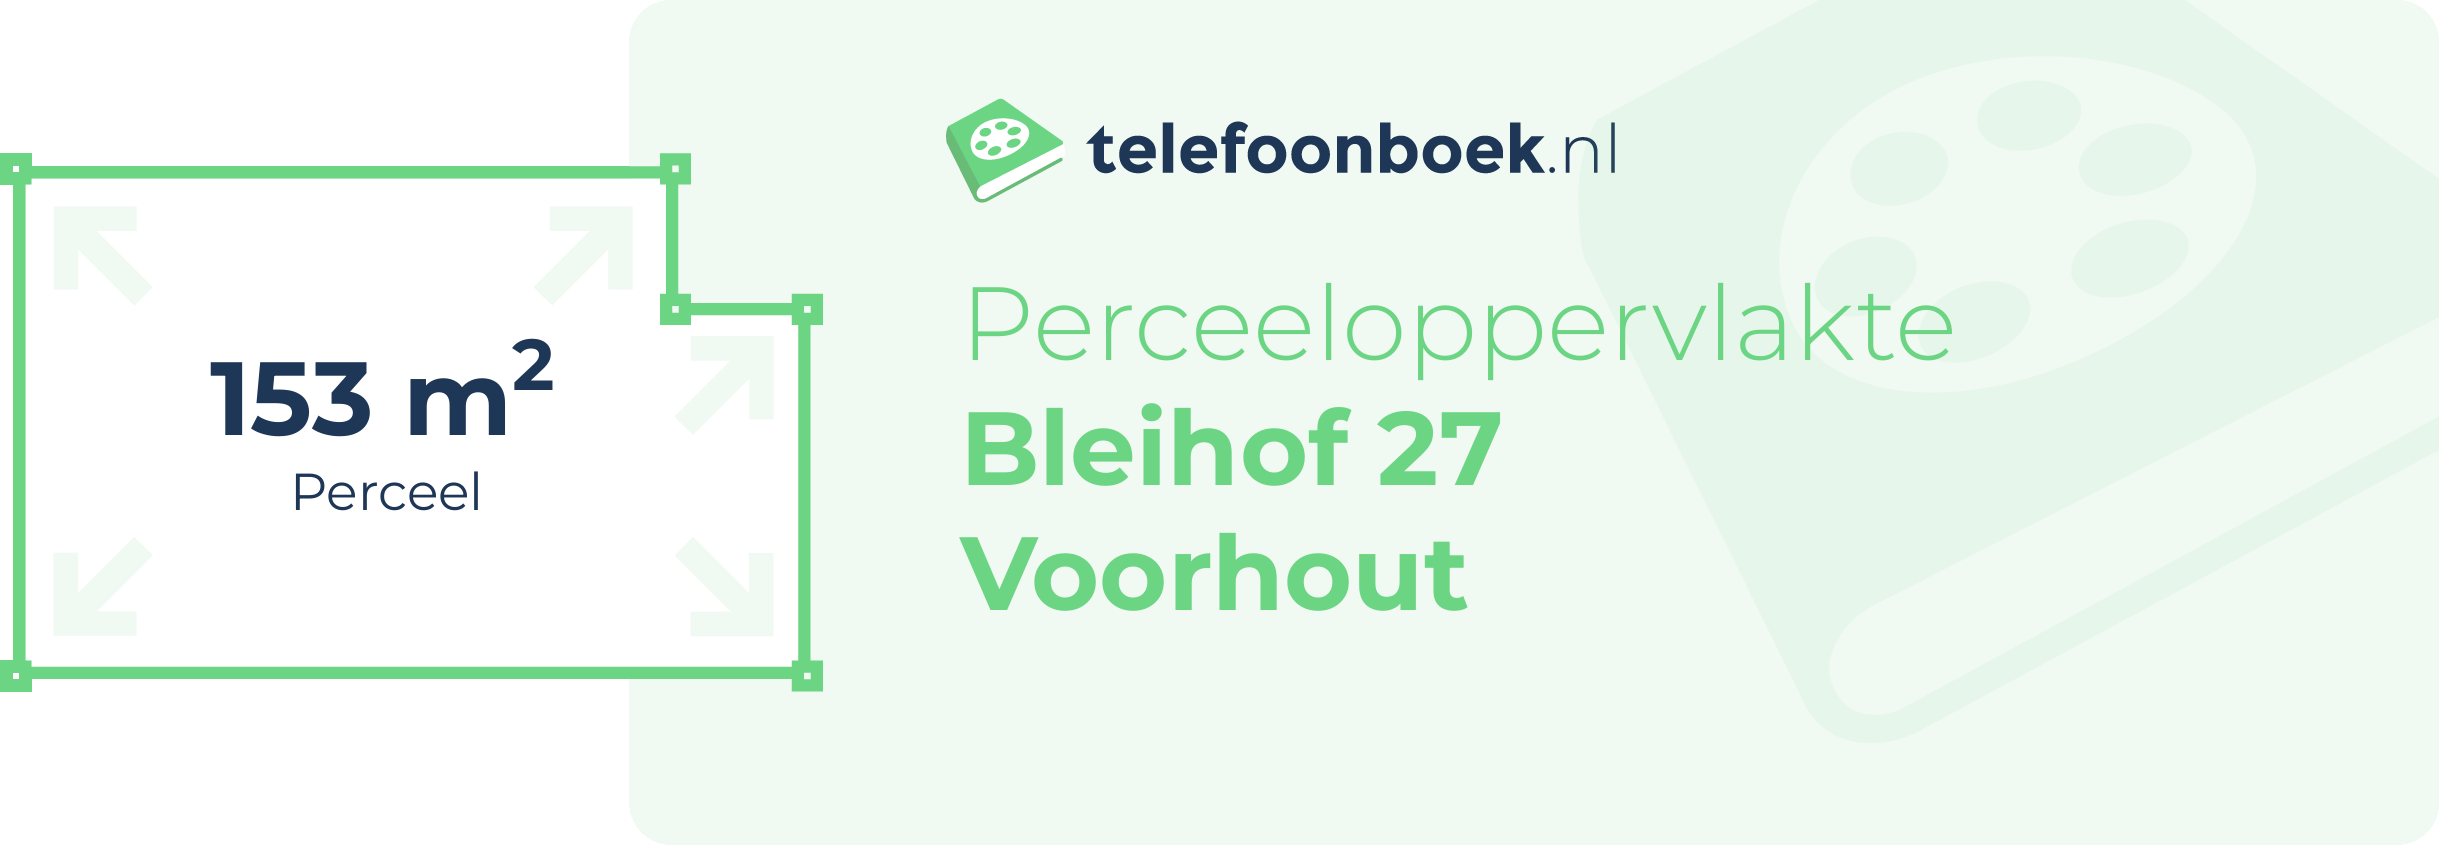 Perceeloppervlakte Bleihof 27 Voorhout